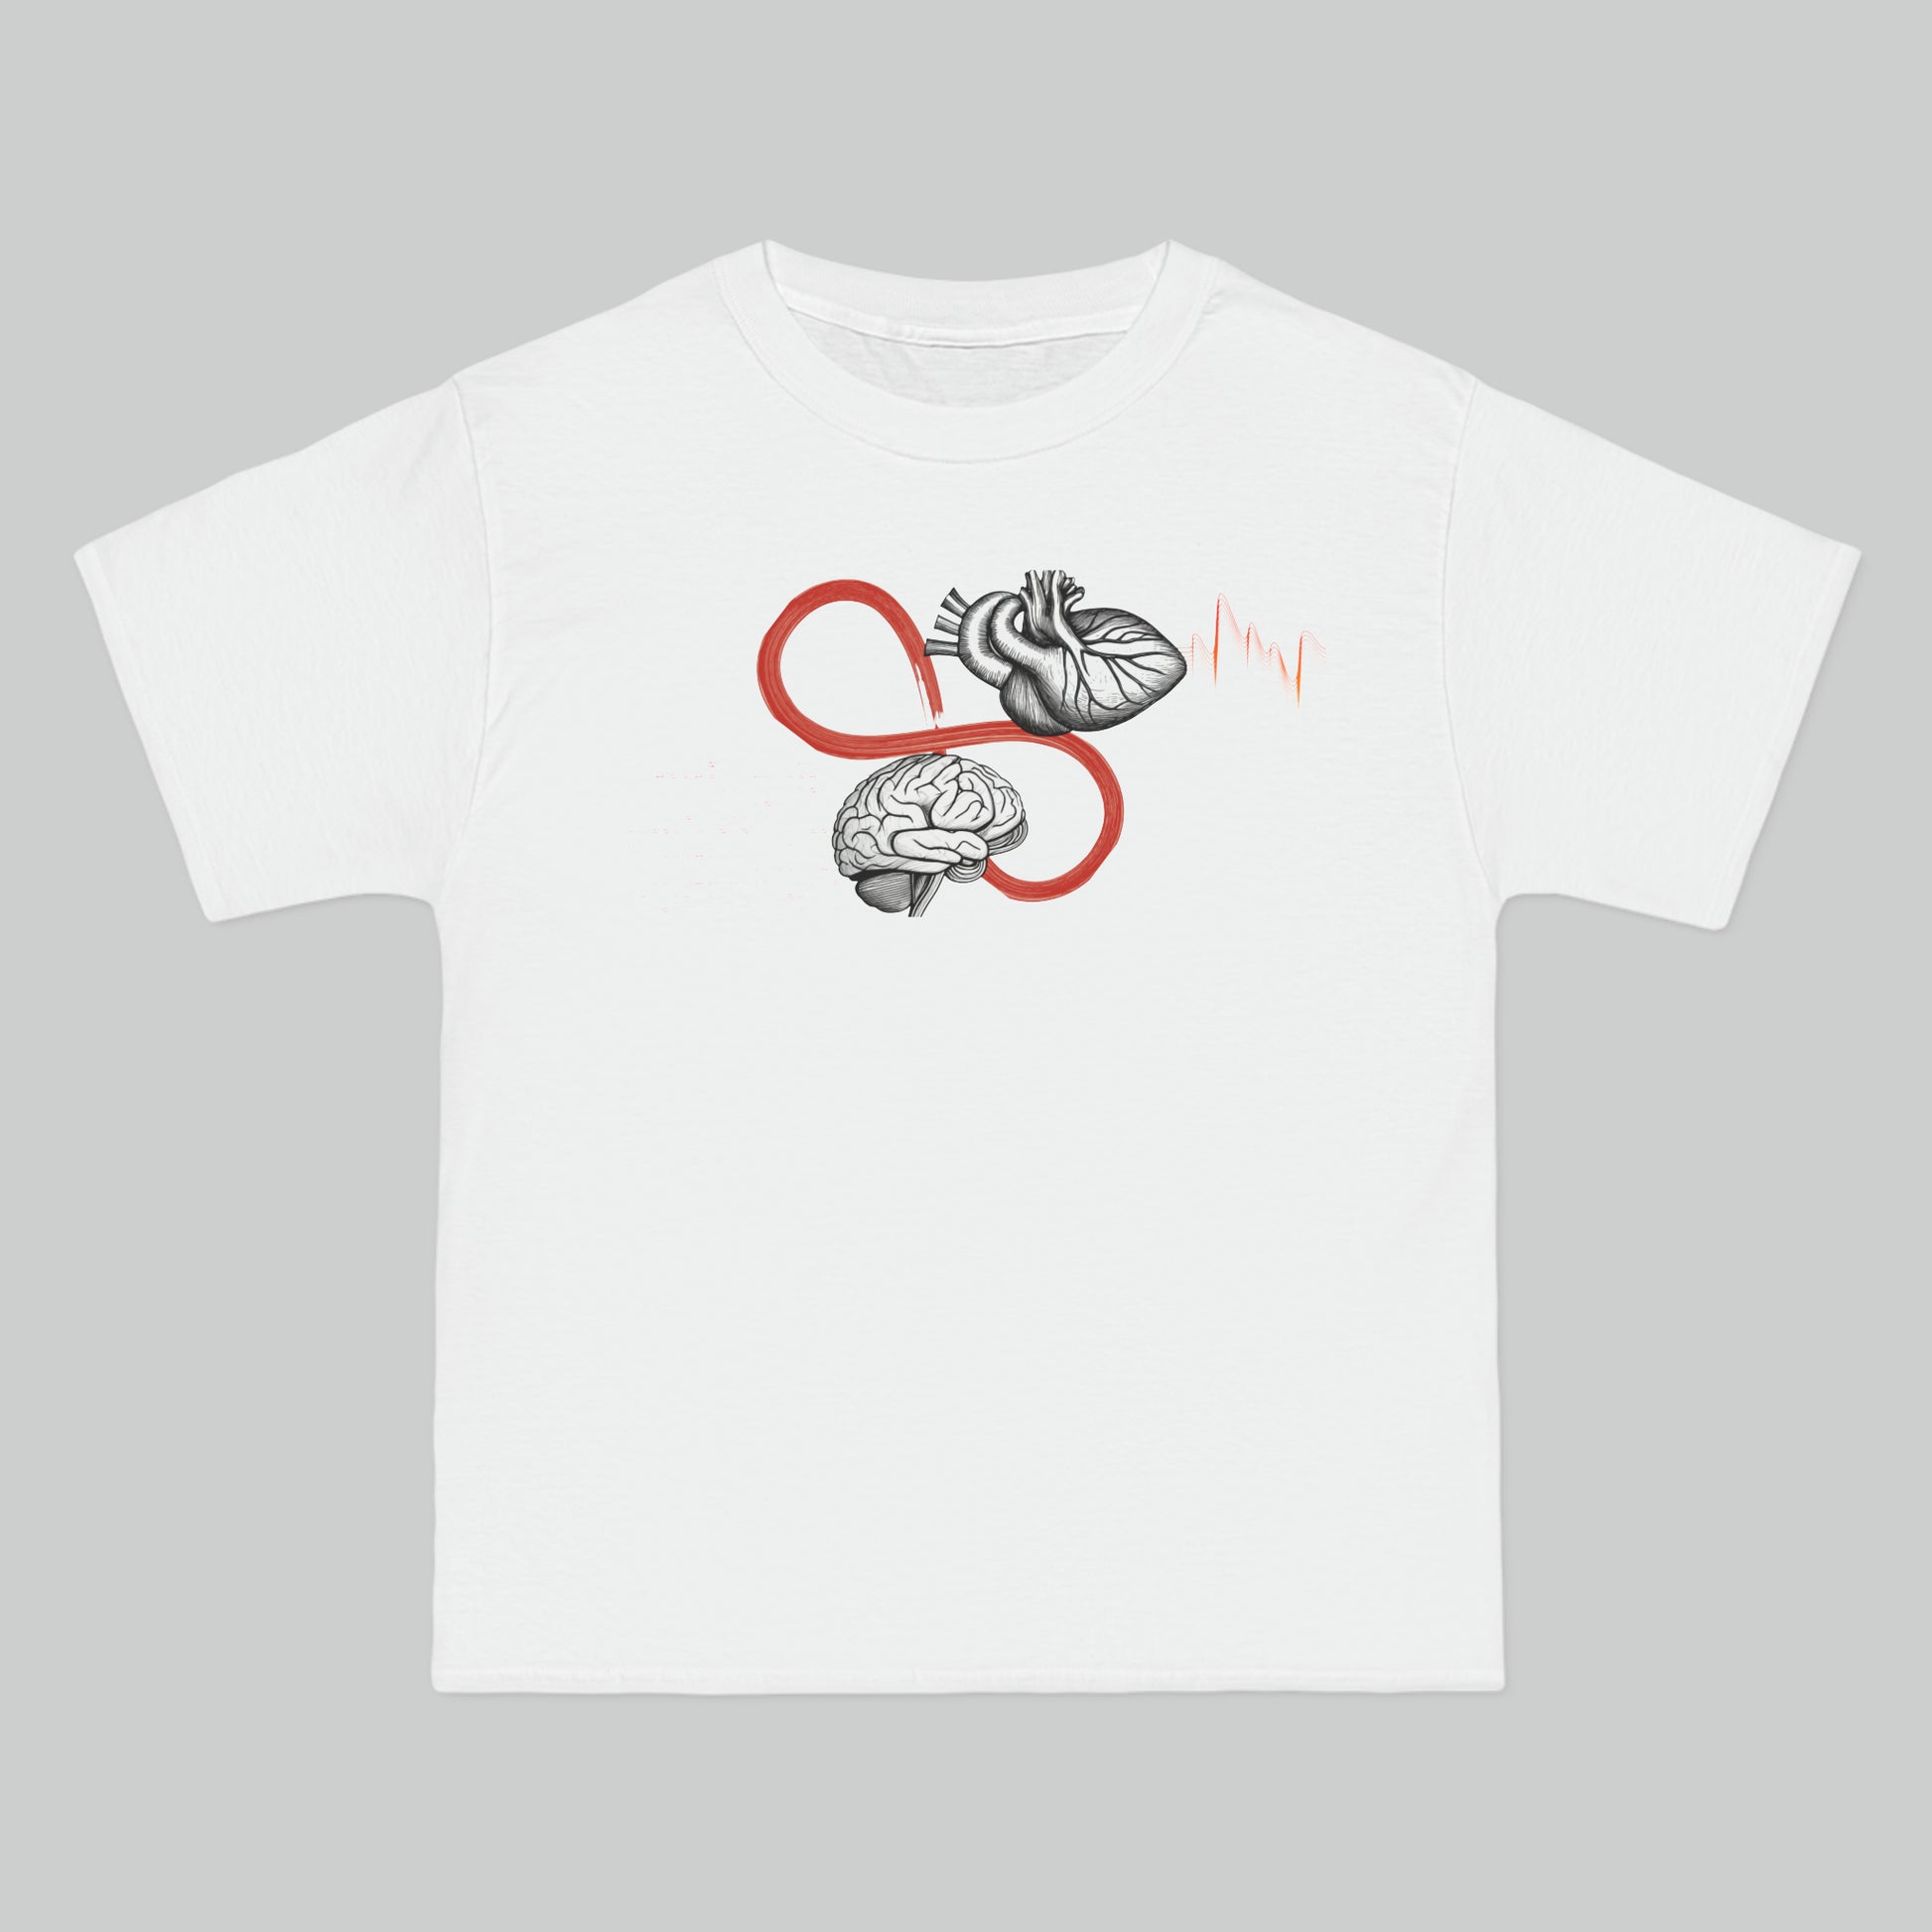 Brain vs Heart - Cotton oversized unisex t-shirt - Minimaluno